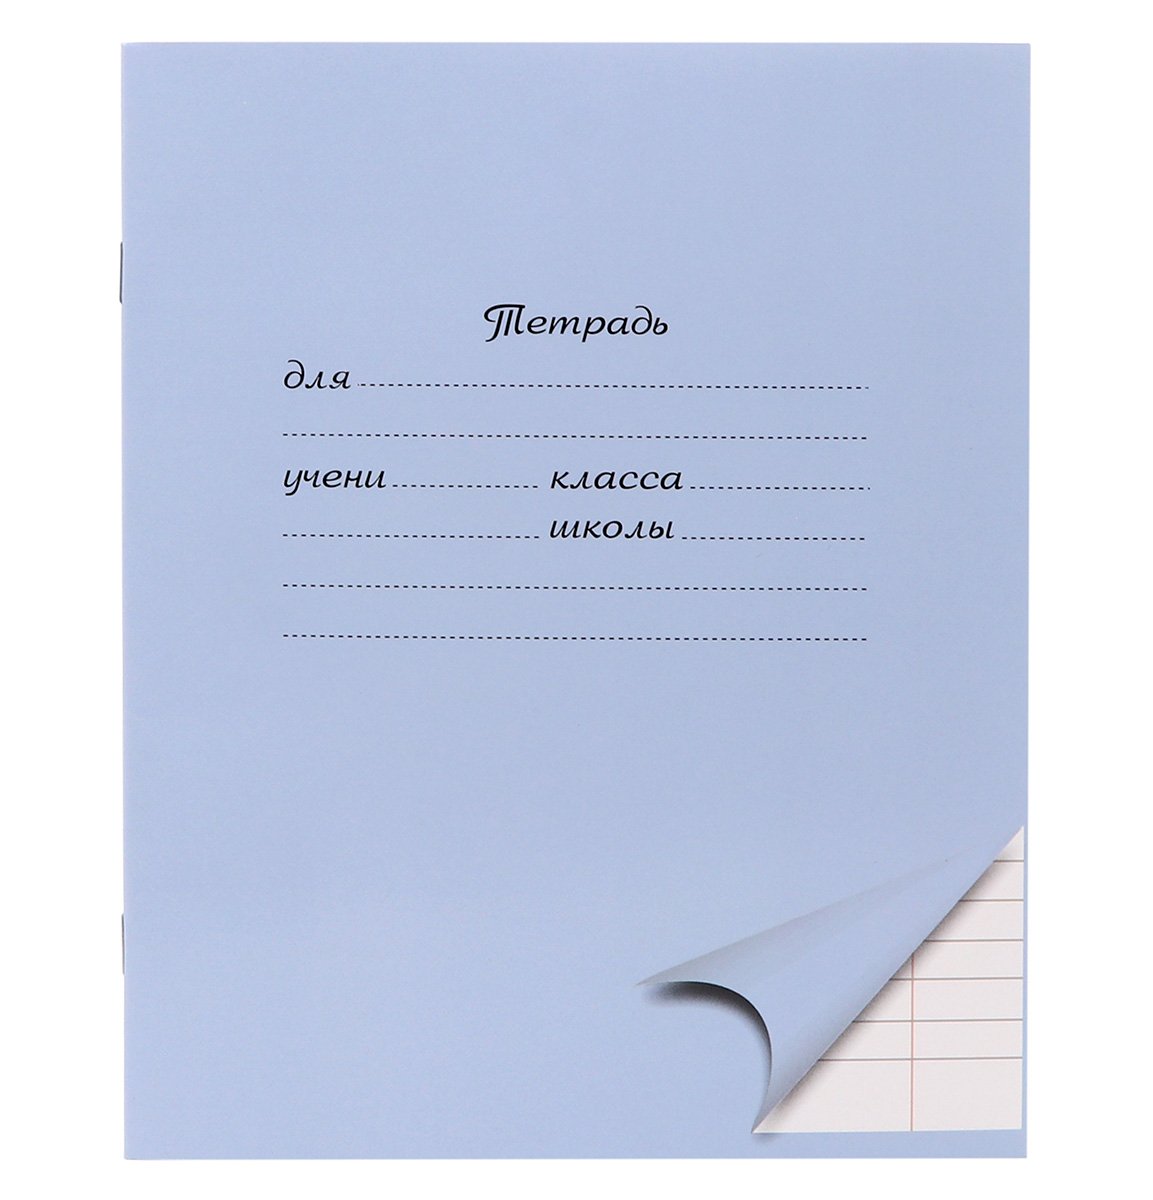 Тетрадь школьная ПандаРог предназначена для учеников начальных классов, подходит для ежедневных и контрольных работ. Имеет голубую однотонную обложку с разметкой для заполнения данных об ученике и учебном заведении. Внутренний блок из офсетной бумаги на двух скрепках включает в себя 18 листов в линейку с полями. Четвертая страница обложки оснащена алфавитом строчных и прописных письменных букв для быстрого освоения правил правописания. Формат А5.